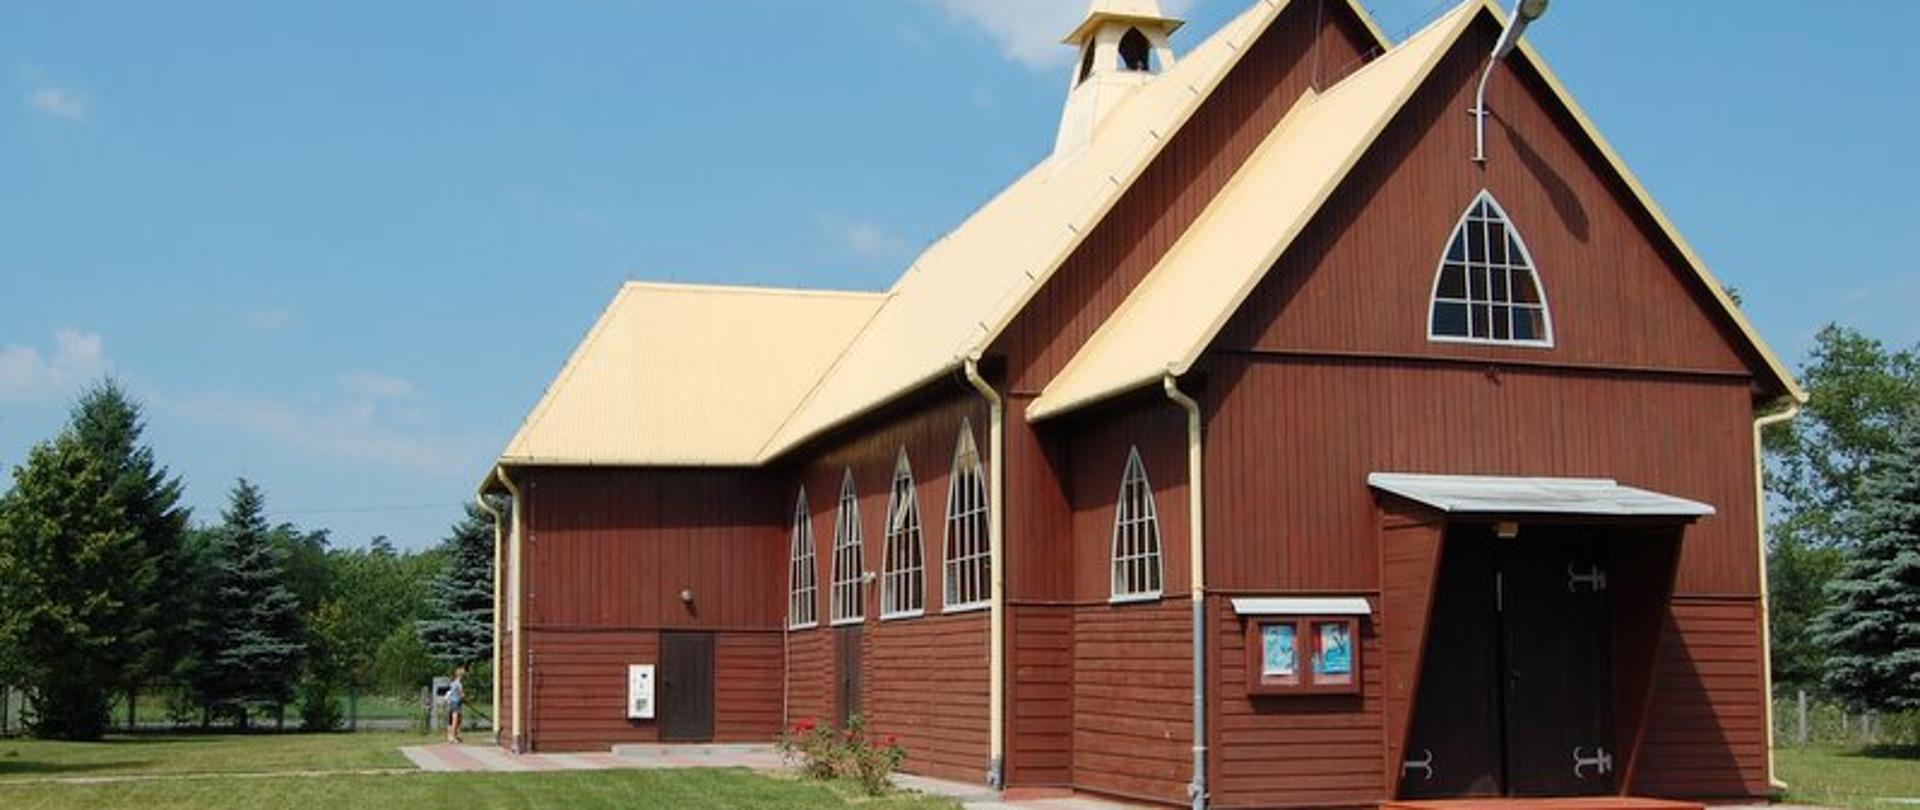 Drewniany, brązowy kościół z jasnym dachem, okna w kształcie trójkątów i duże brązowe drzwi. Przed kościołem zielony trawnik. 